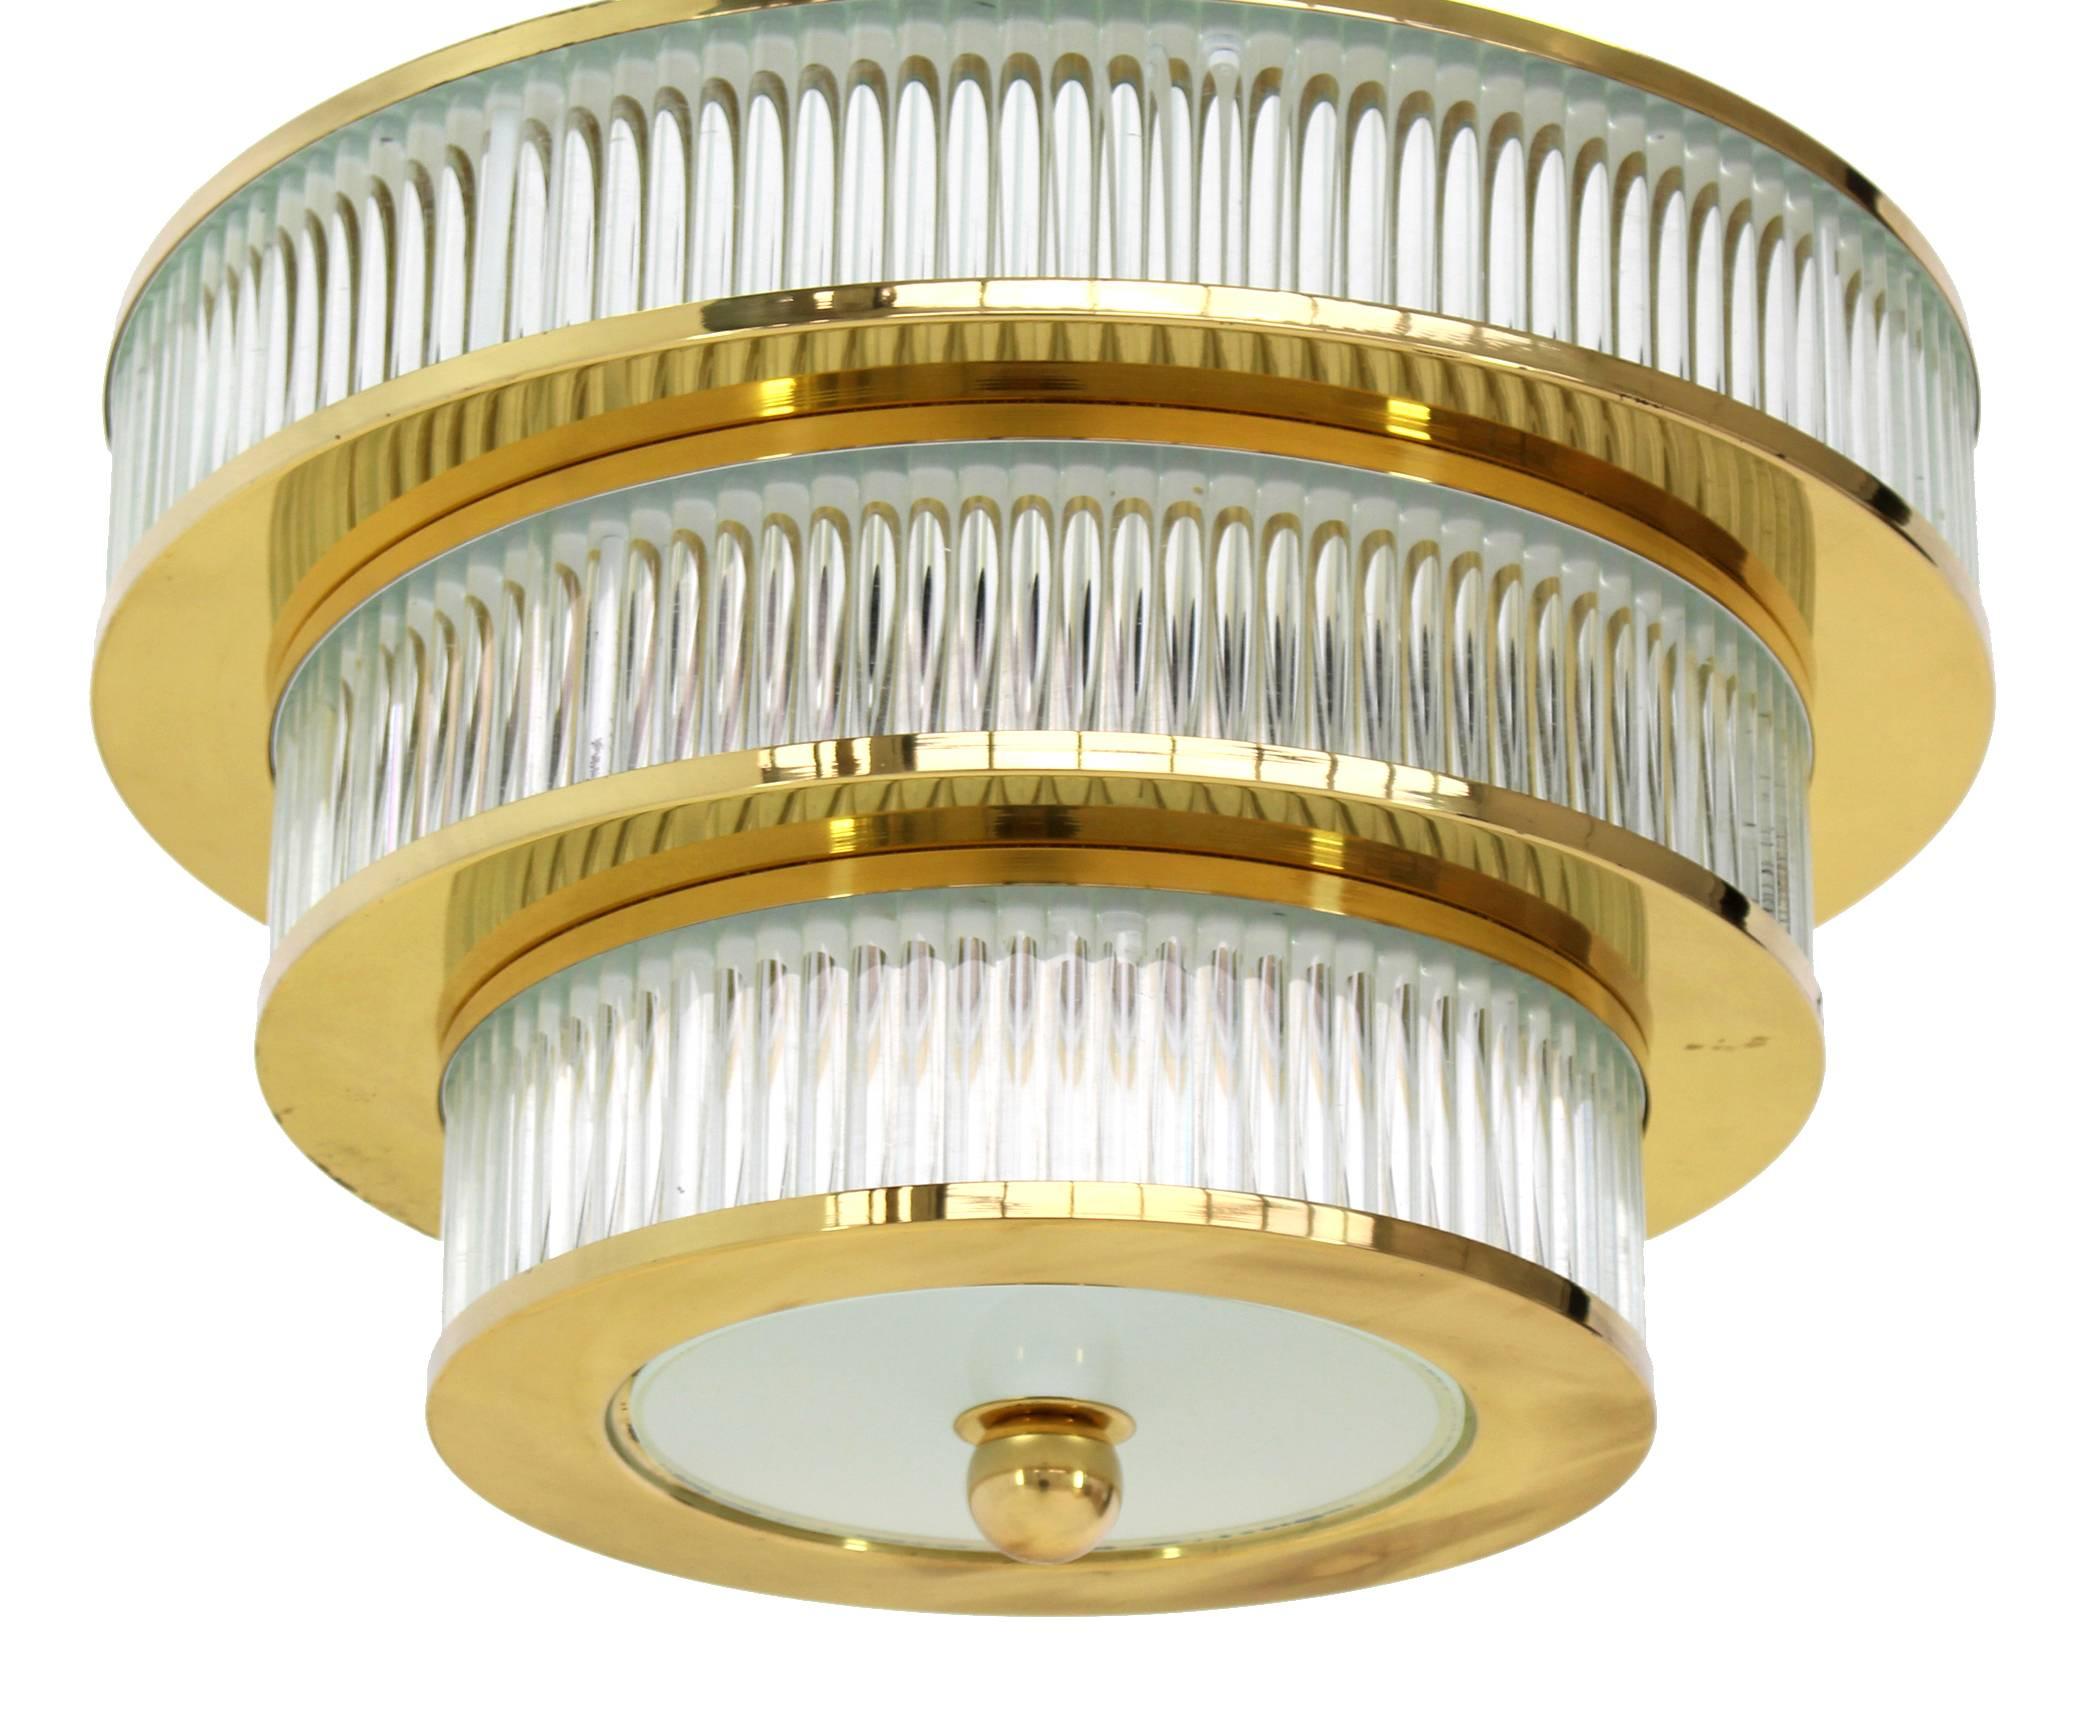 brass modern light fixtures